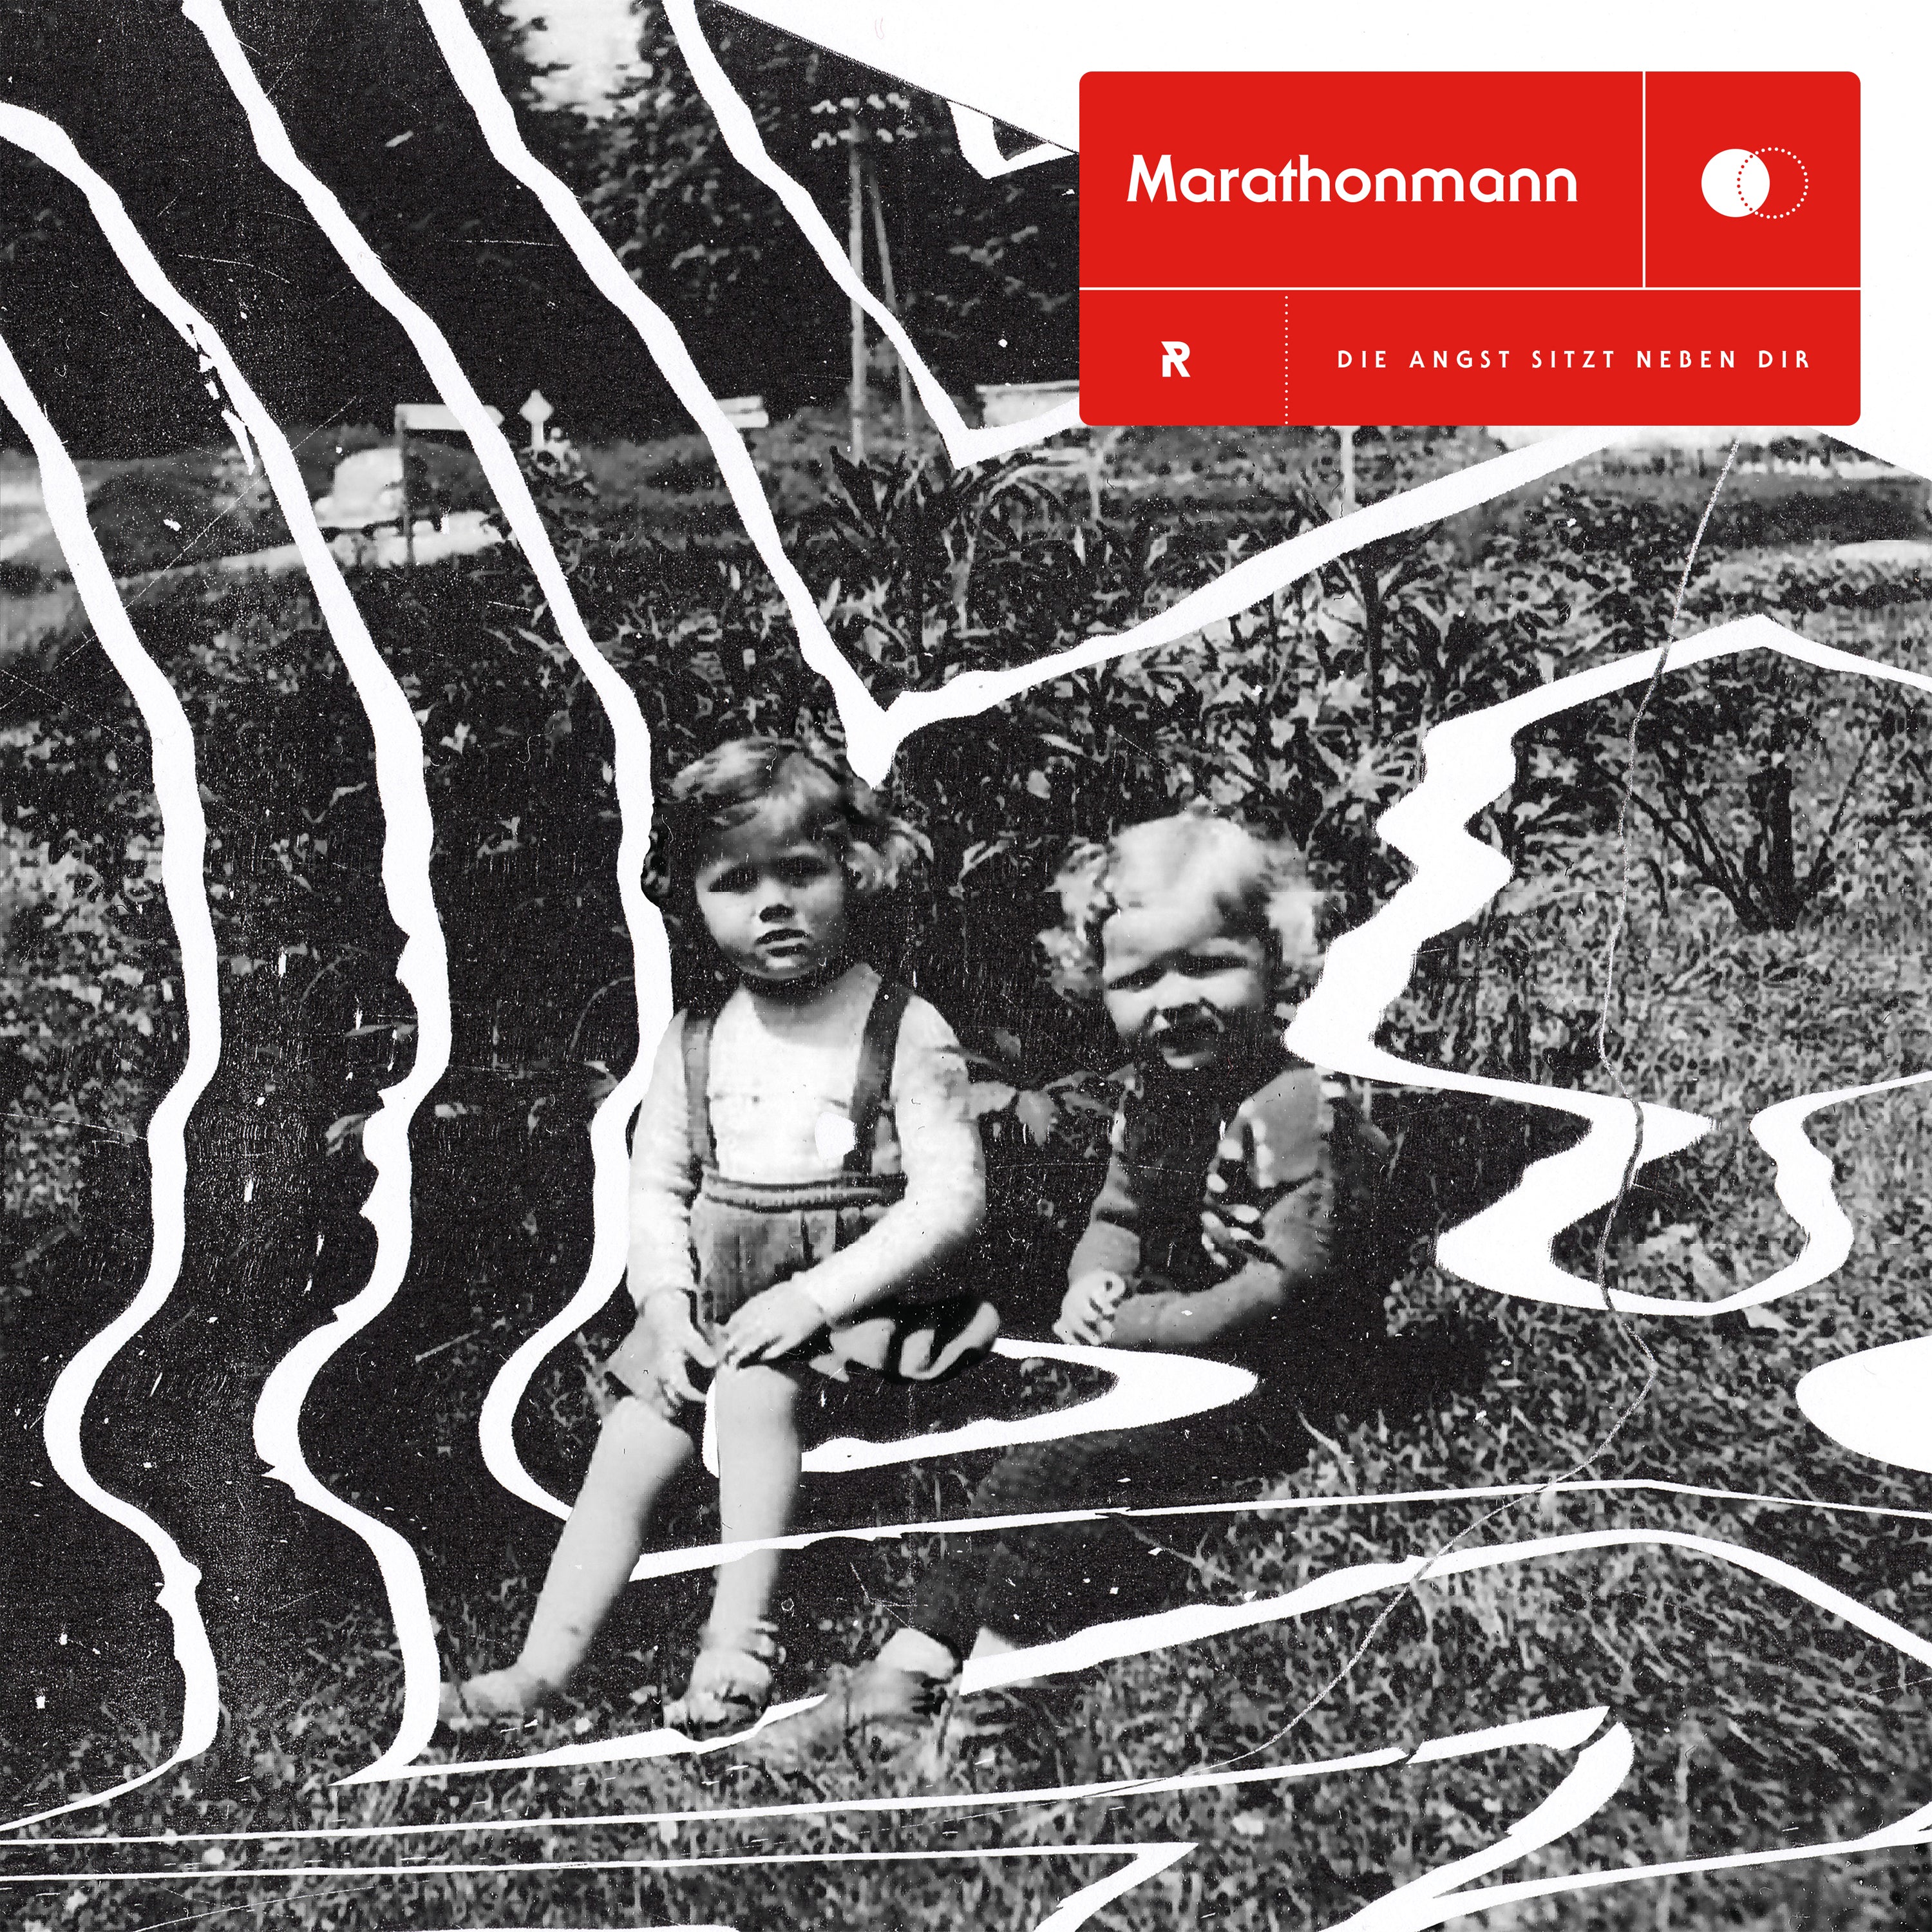 Marathonmann - Die Angst sitzt neben dir - Glow in the Dark Vinyl LP (2019) - Redfield Records